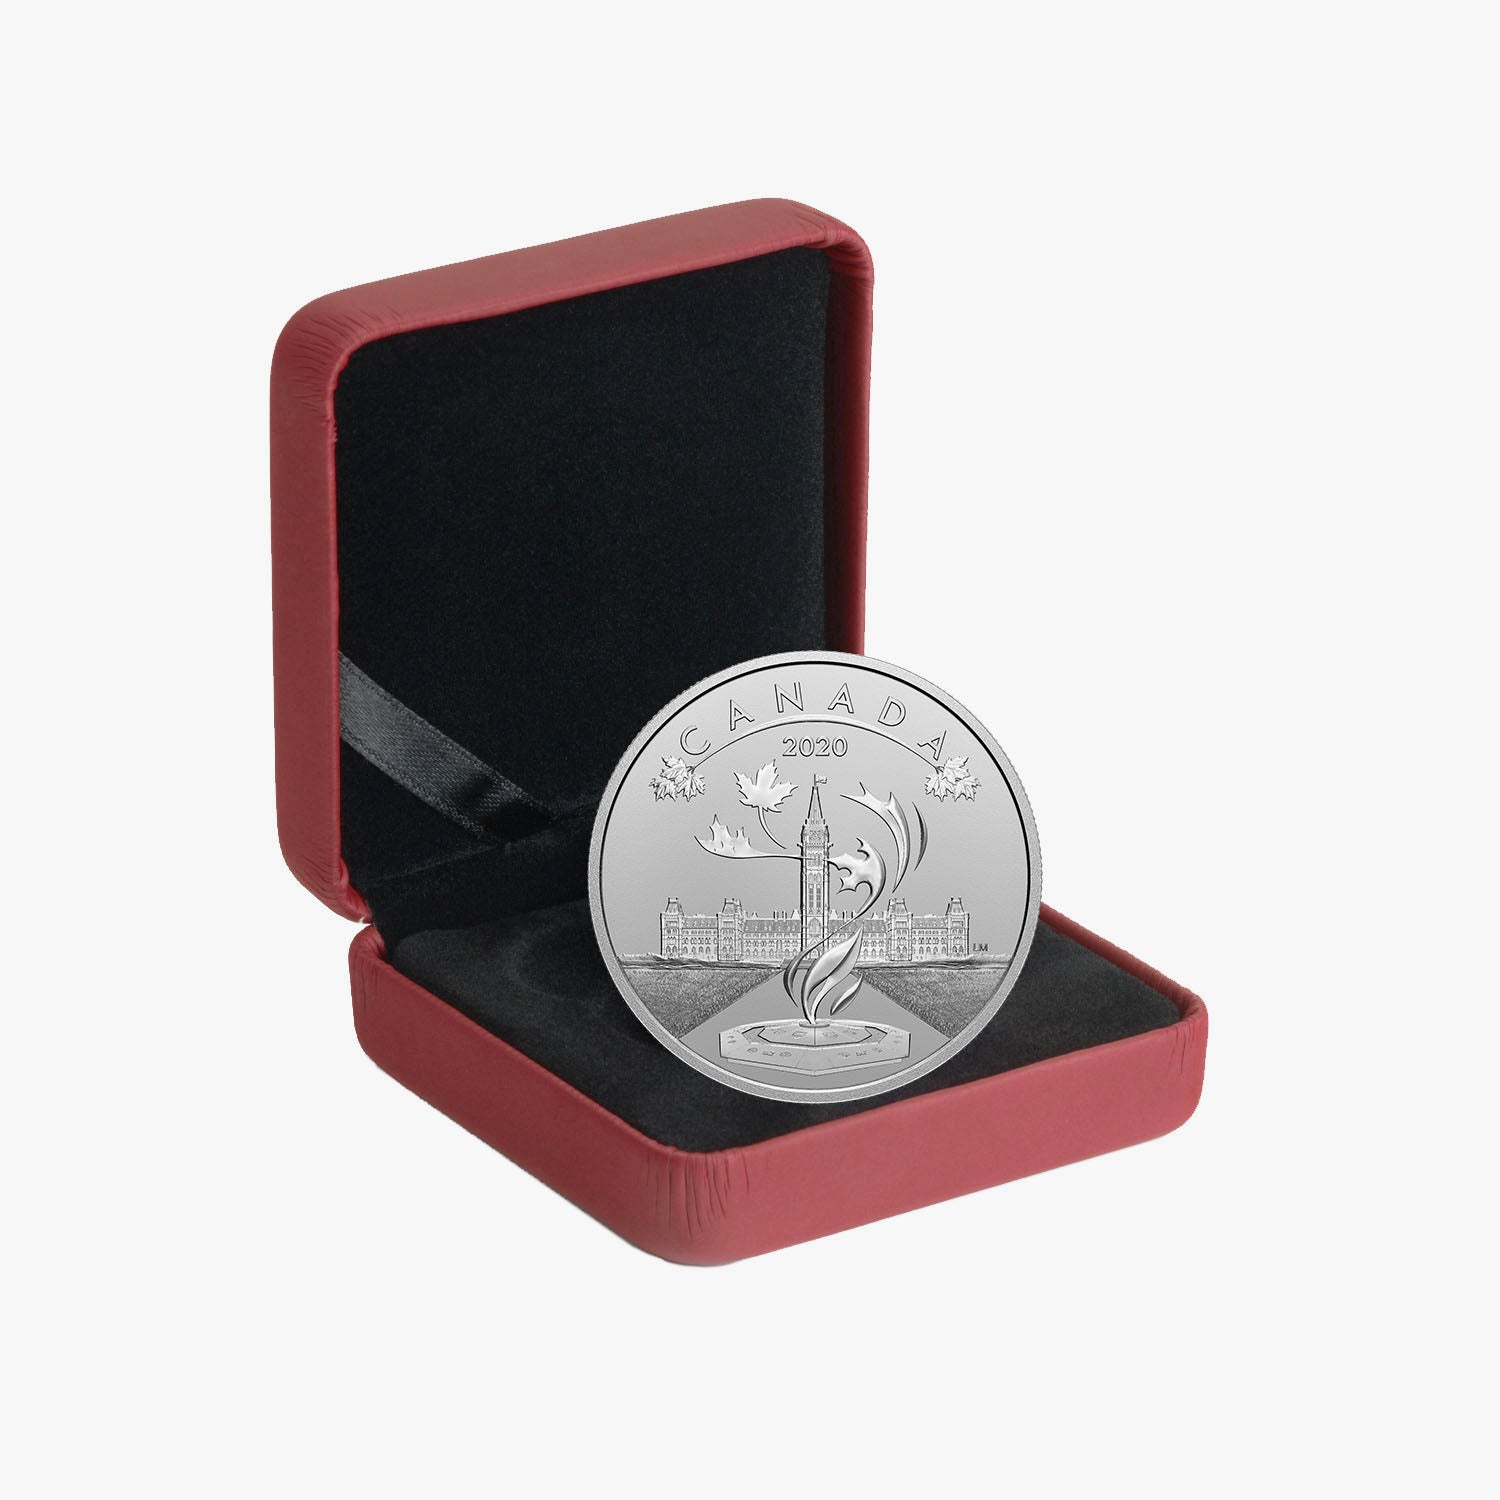 O Canada Parliament Coin